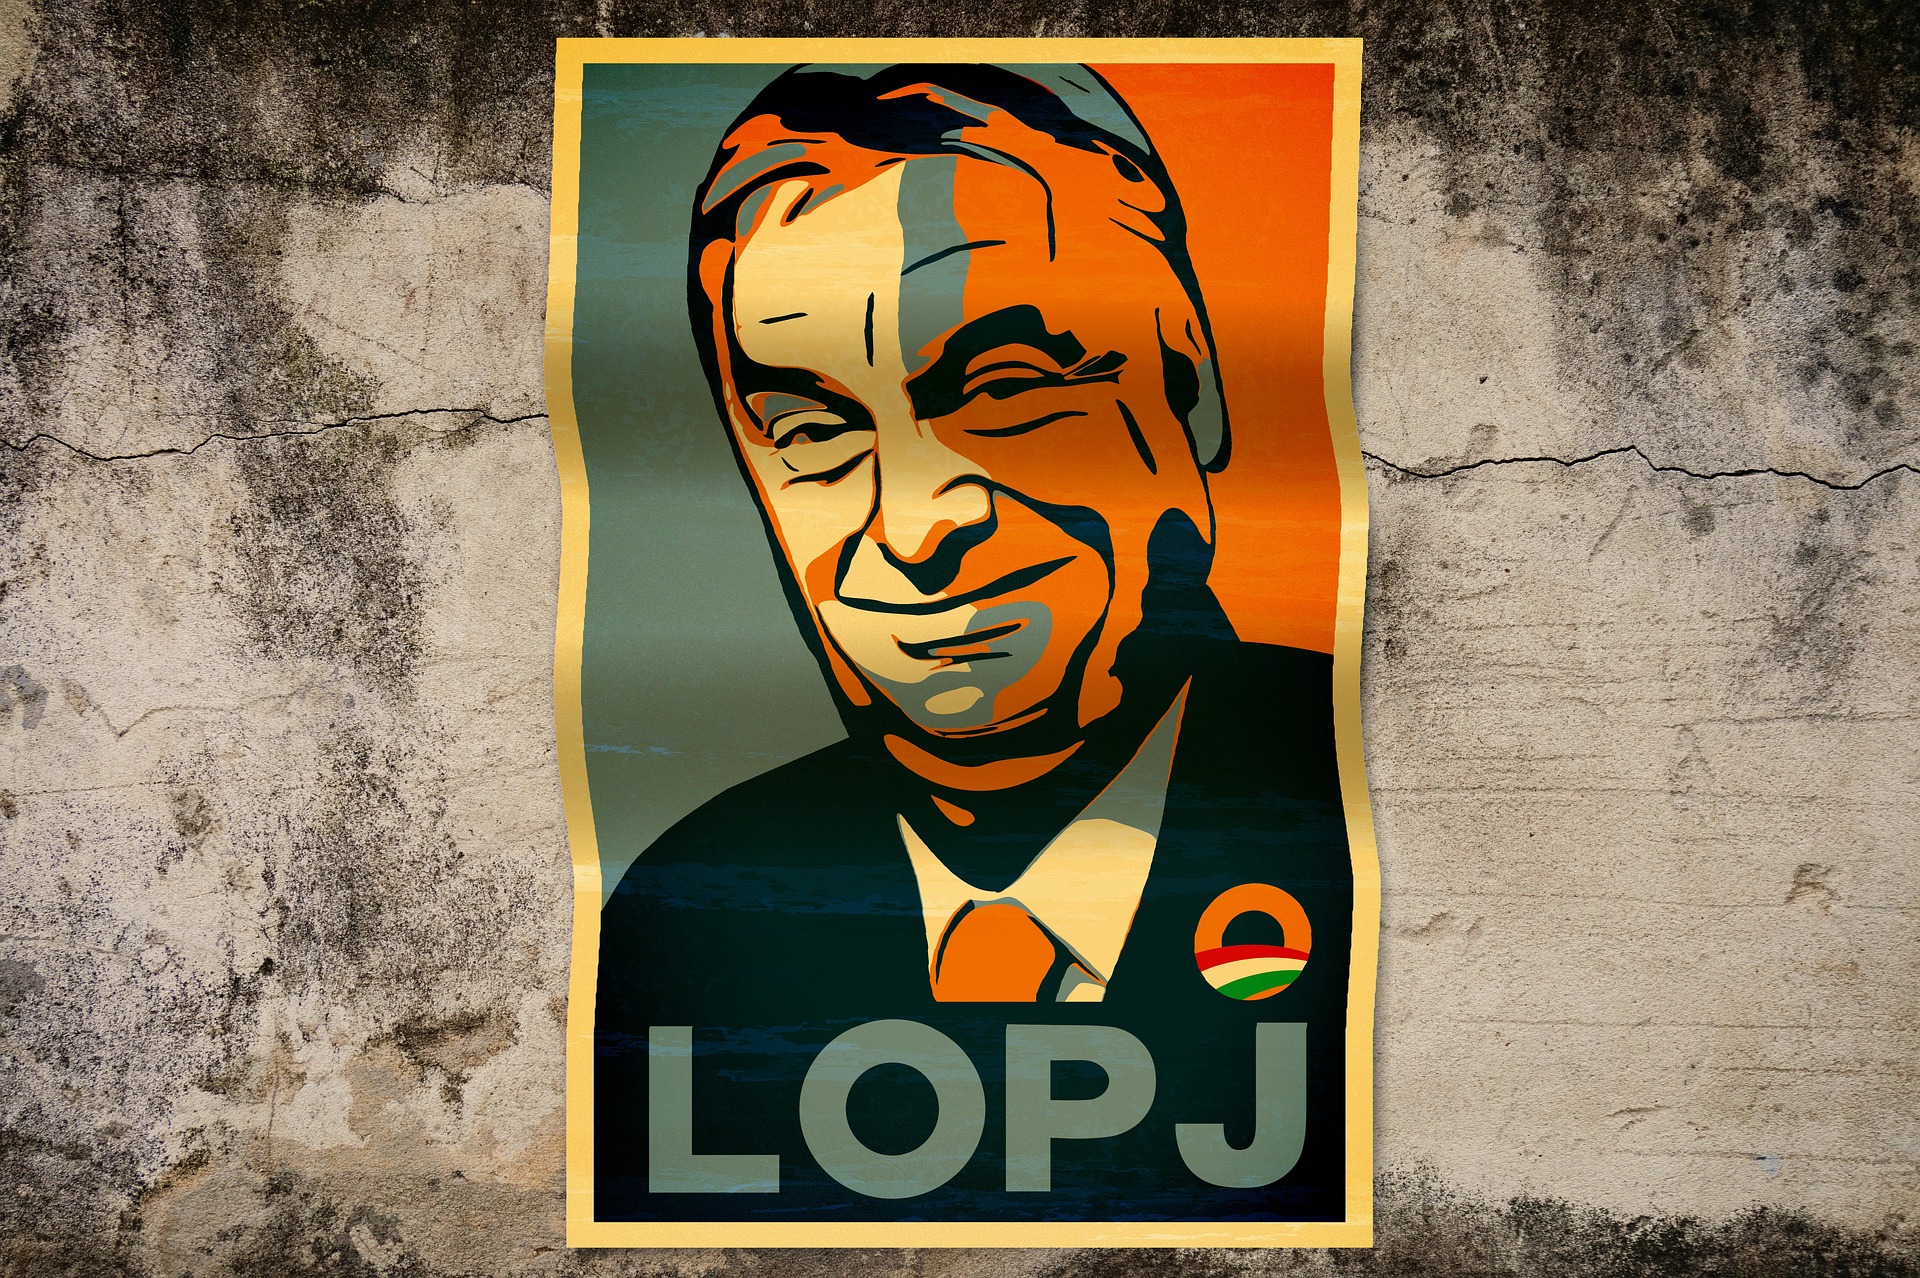 Orbán a picco tra posizioni filorusse e risveglio politico giovanile